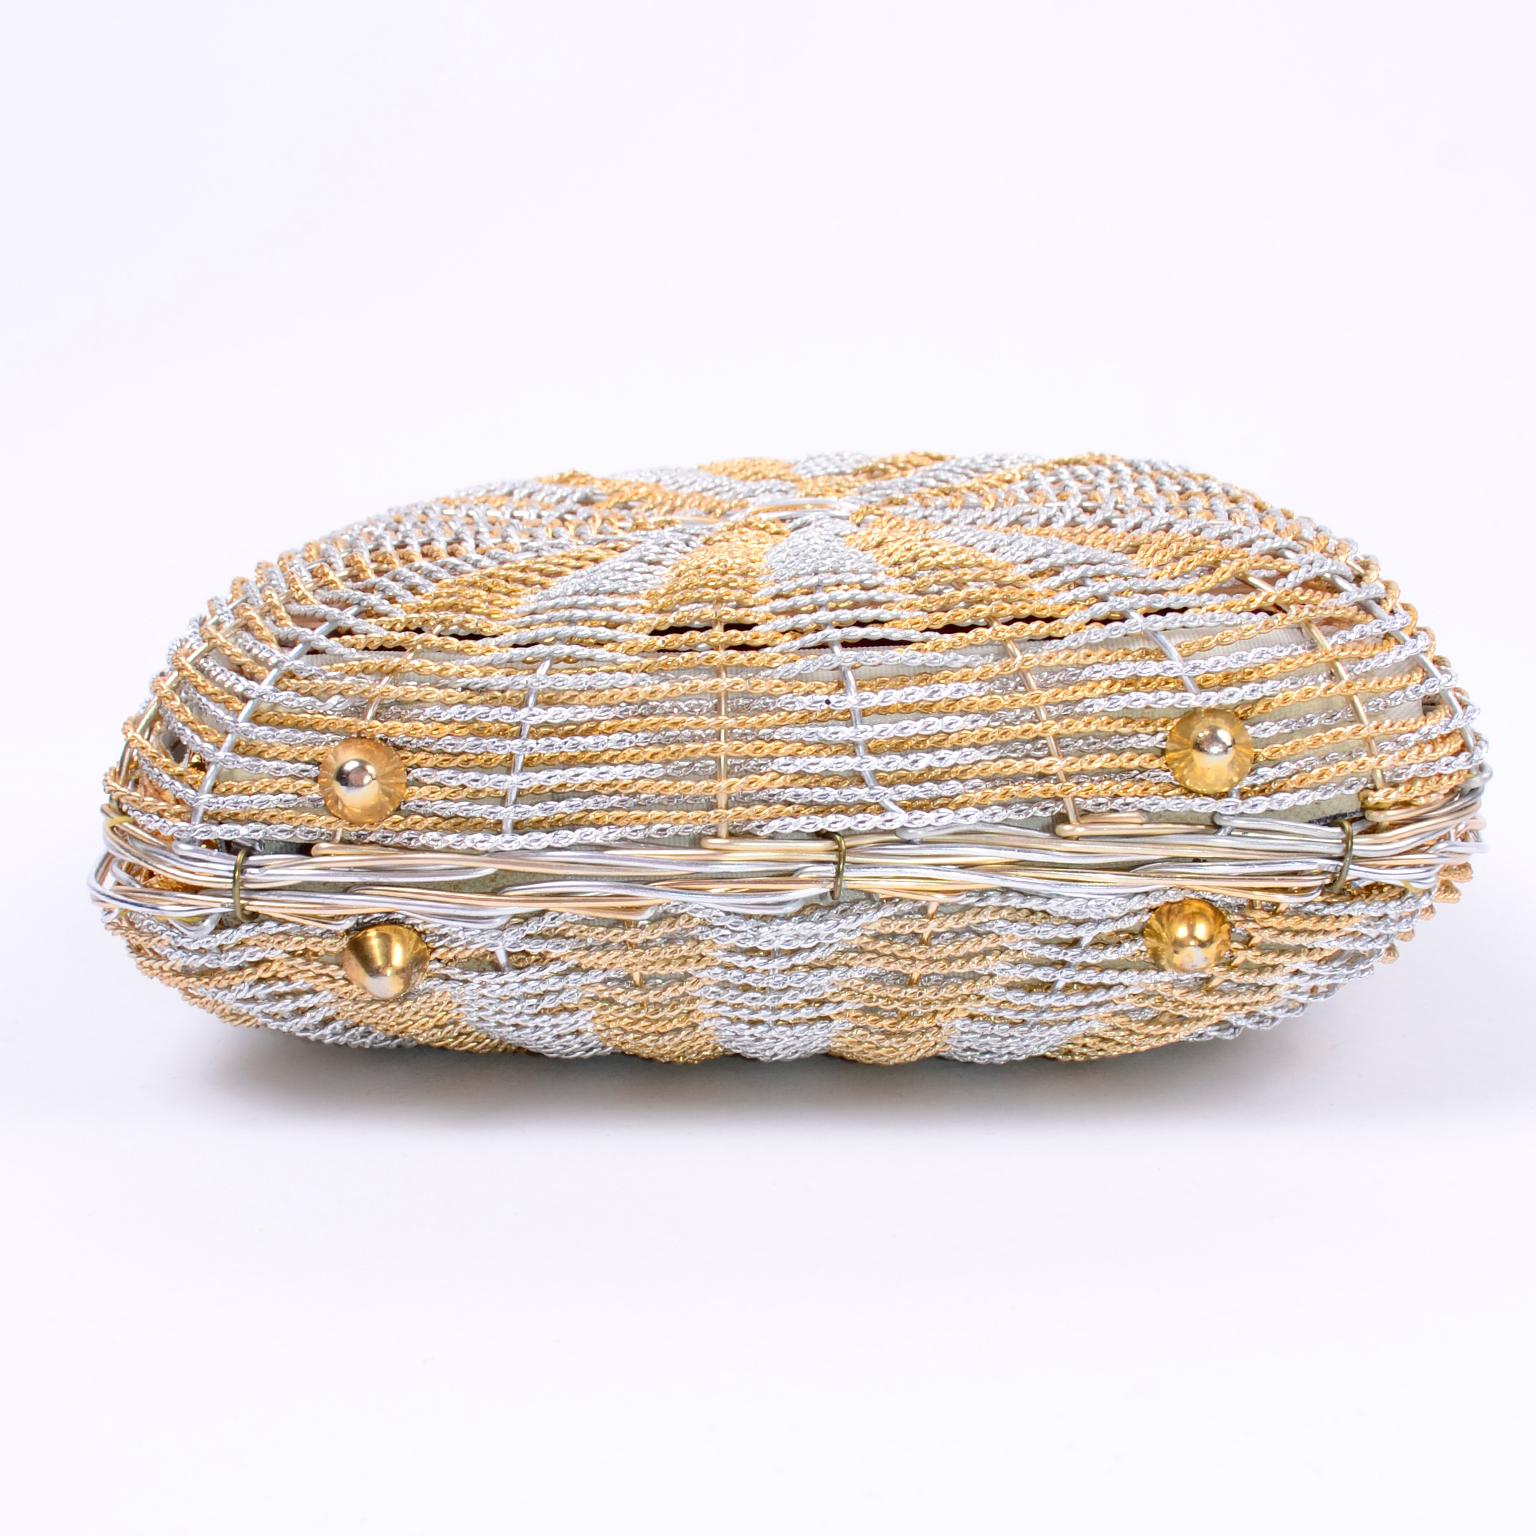 Women's 1960s Koret Vintage Bag Woven Gold & Silver Basket Handbag W Gold Hardware